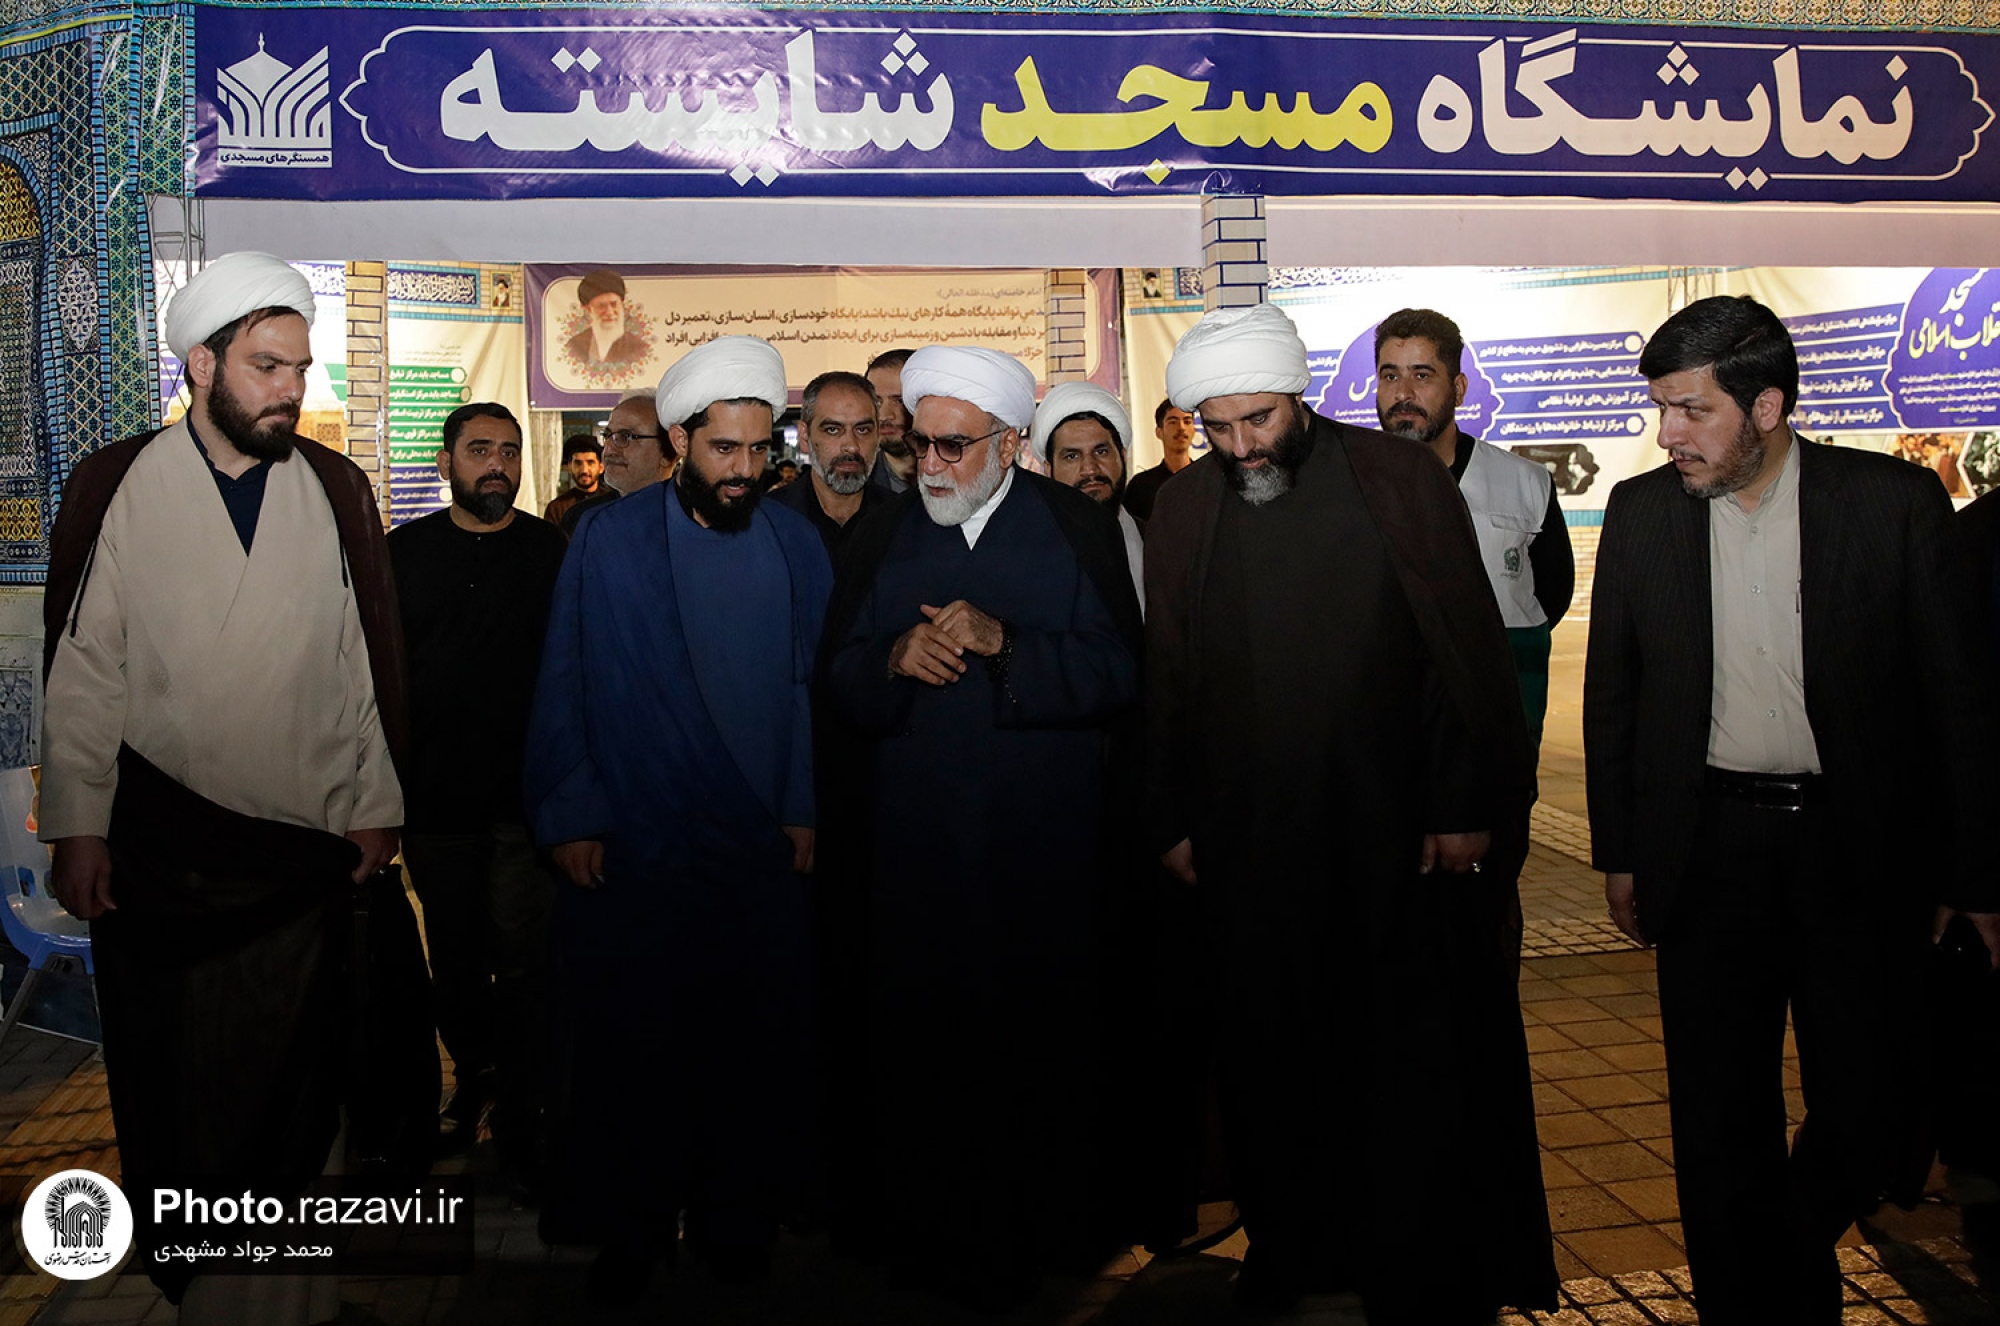 بازدید تولیت آستان قدس رضوی از نمایشگاه مسجد شایسته